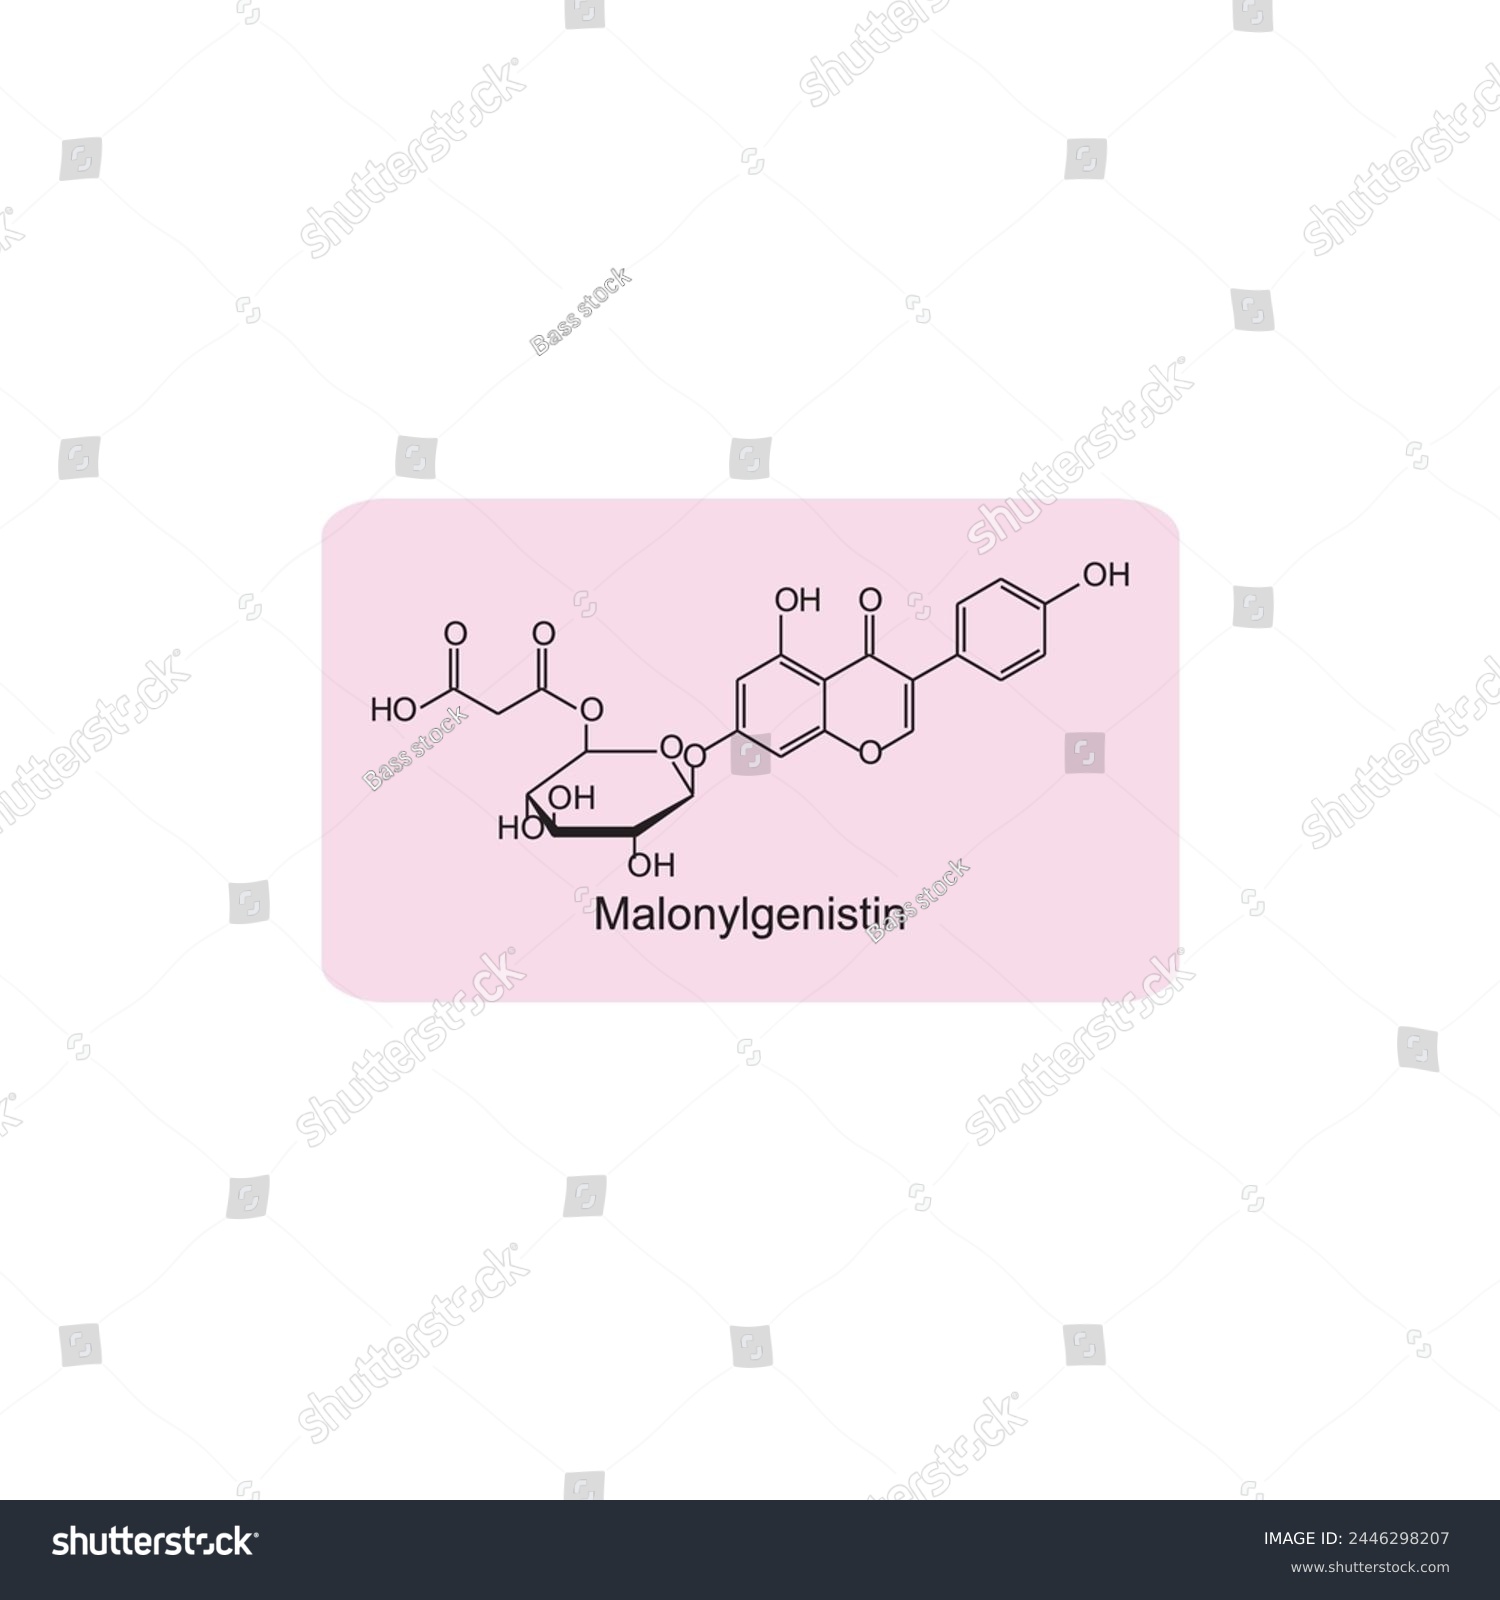 SVG of Malonyldaidzin skeletal structure diagram.Isoflavanone compound molecule scientific illustration on pink background. svg